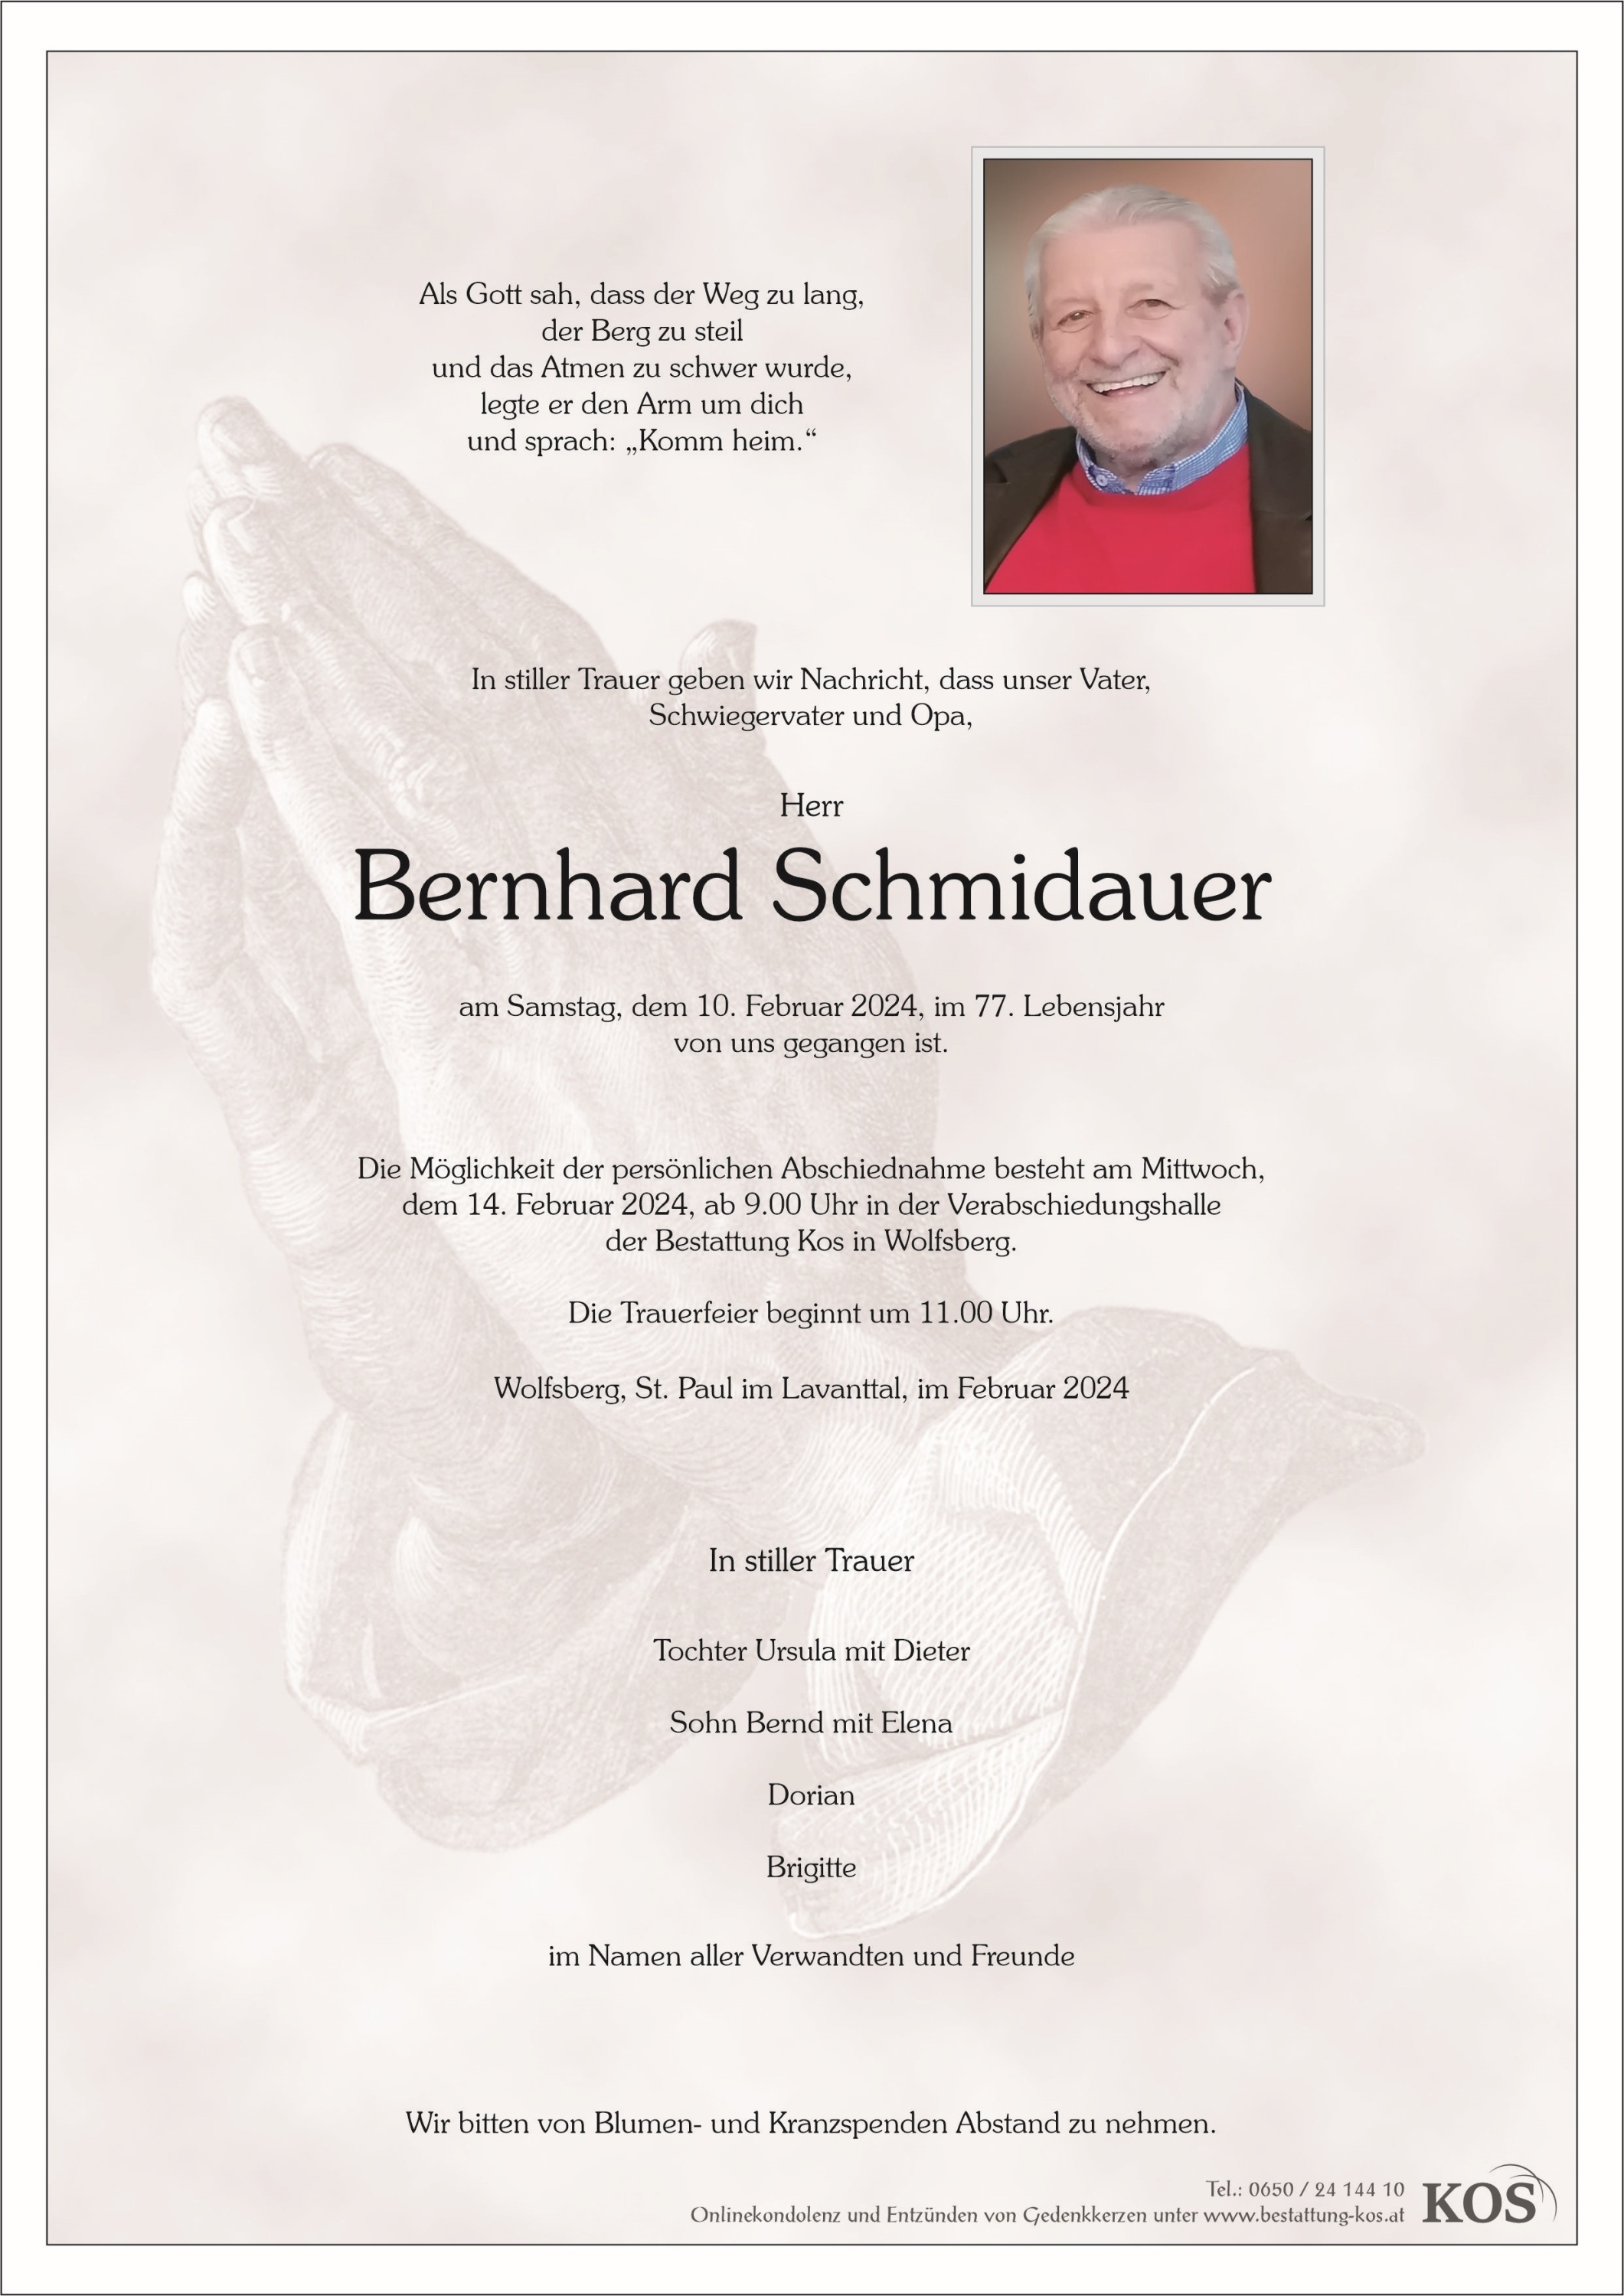 Bernhard Schmidauer